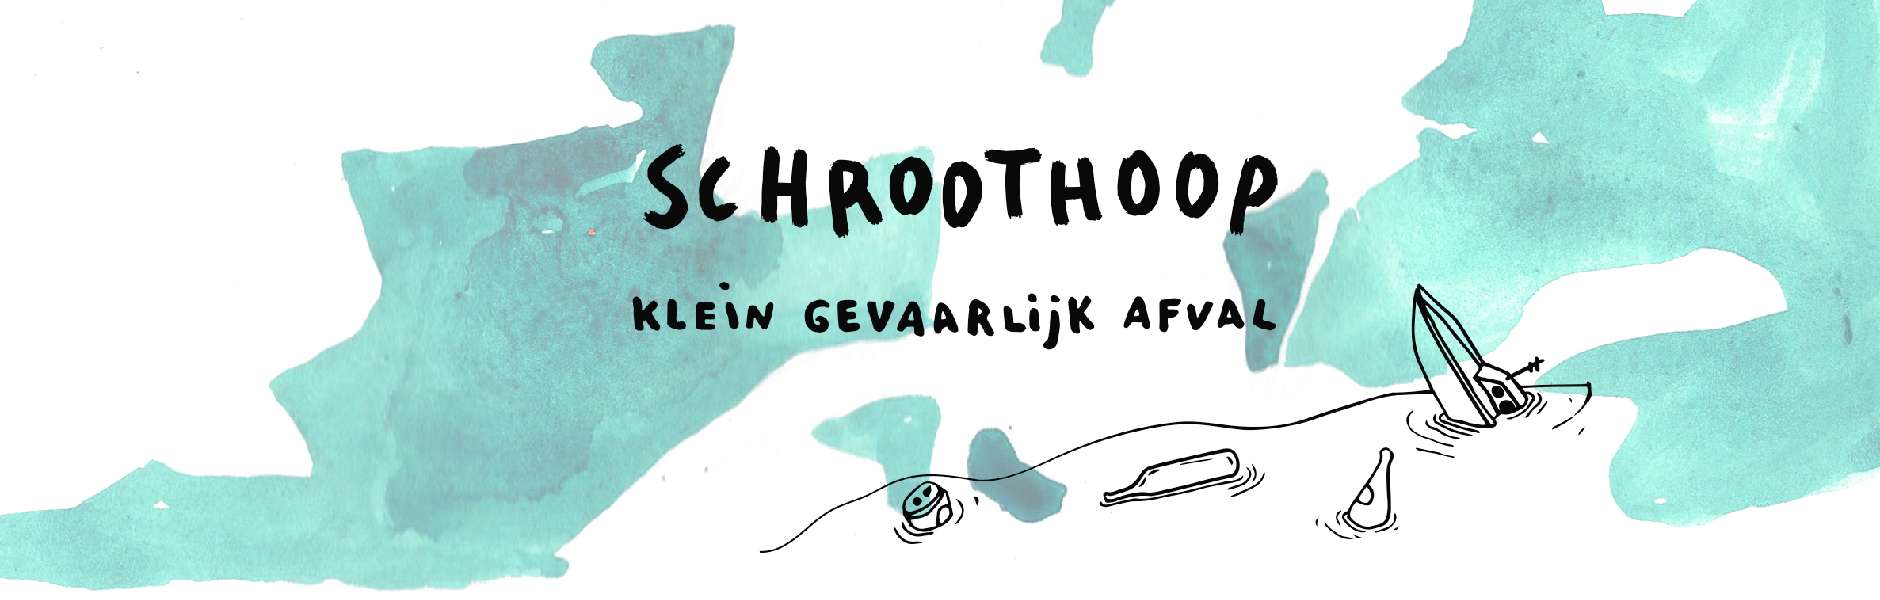 Schroothoop